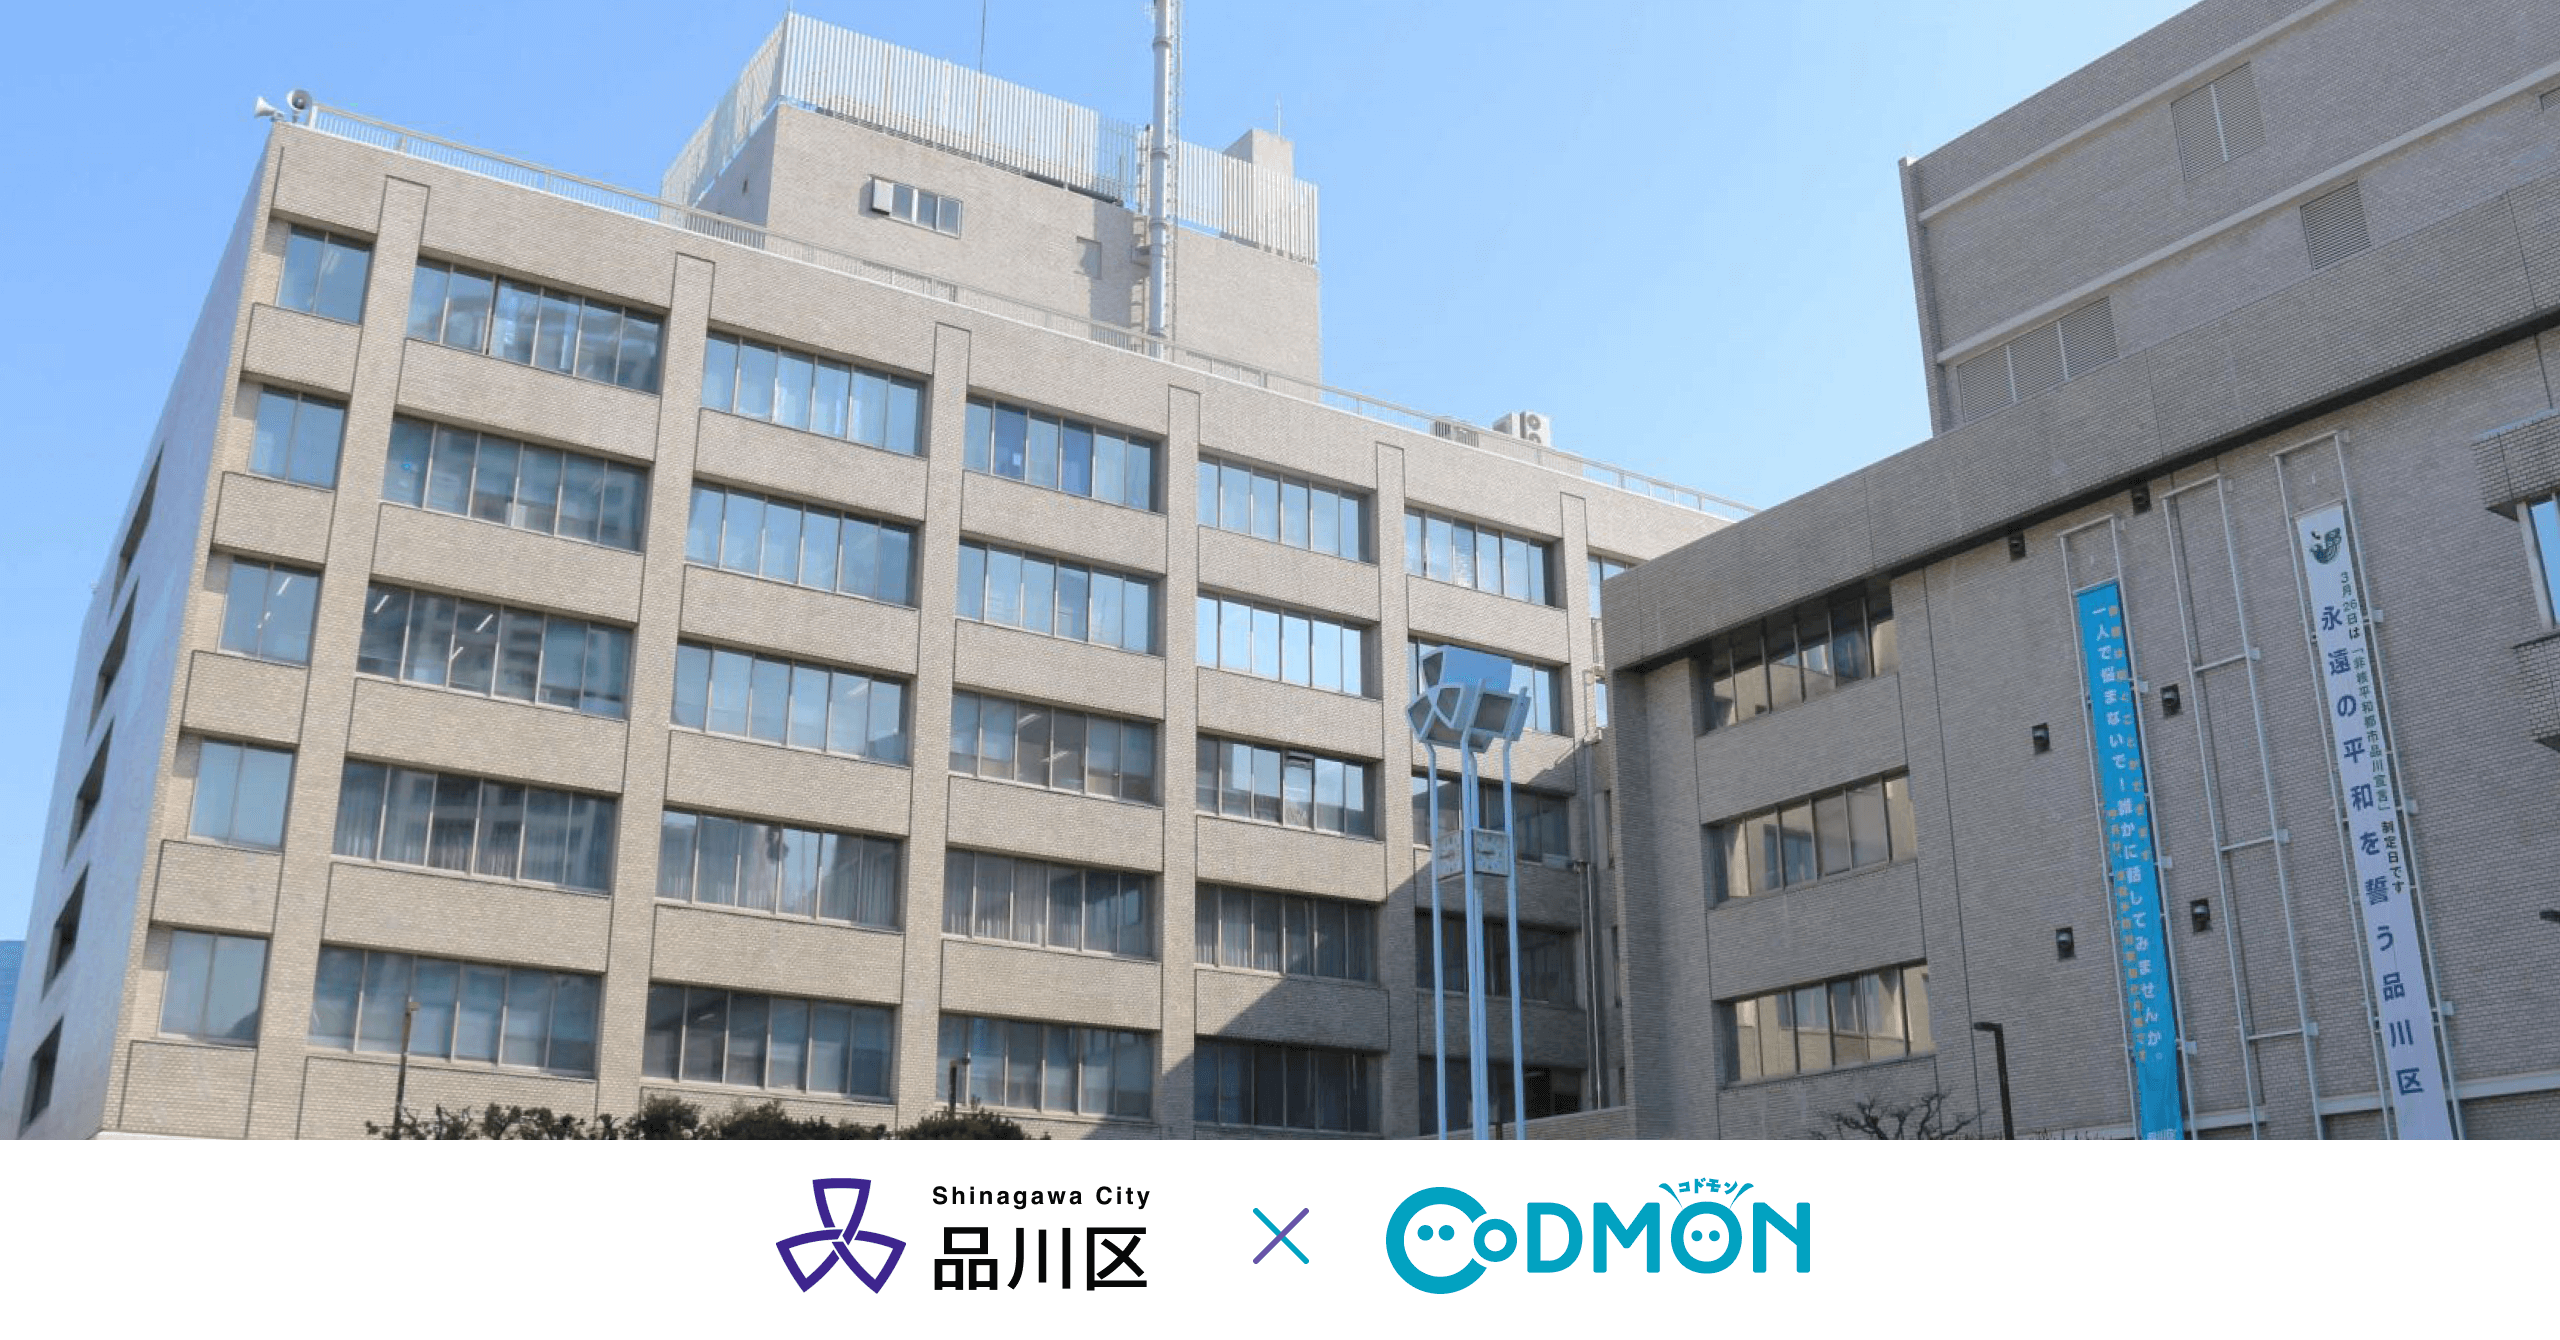 コドモン、東京都品川区の公立保育所40施設において 保育・教育施設向けICTサービス「CoDMON」導入